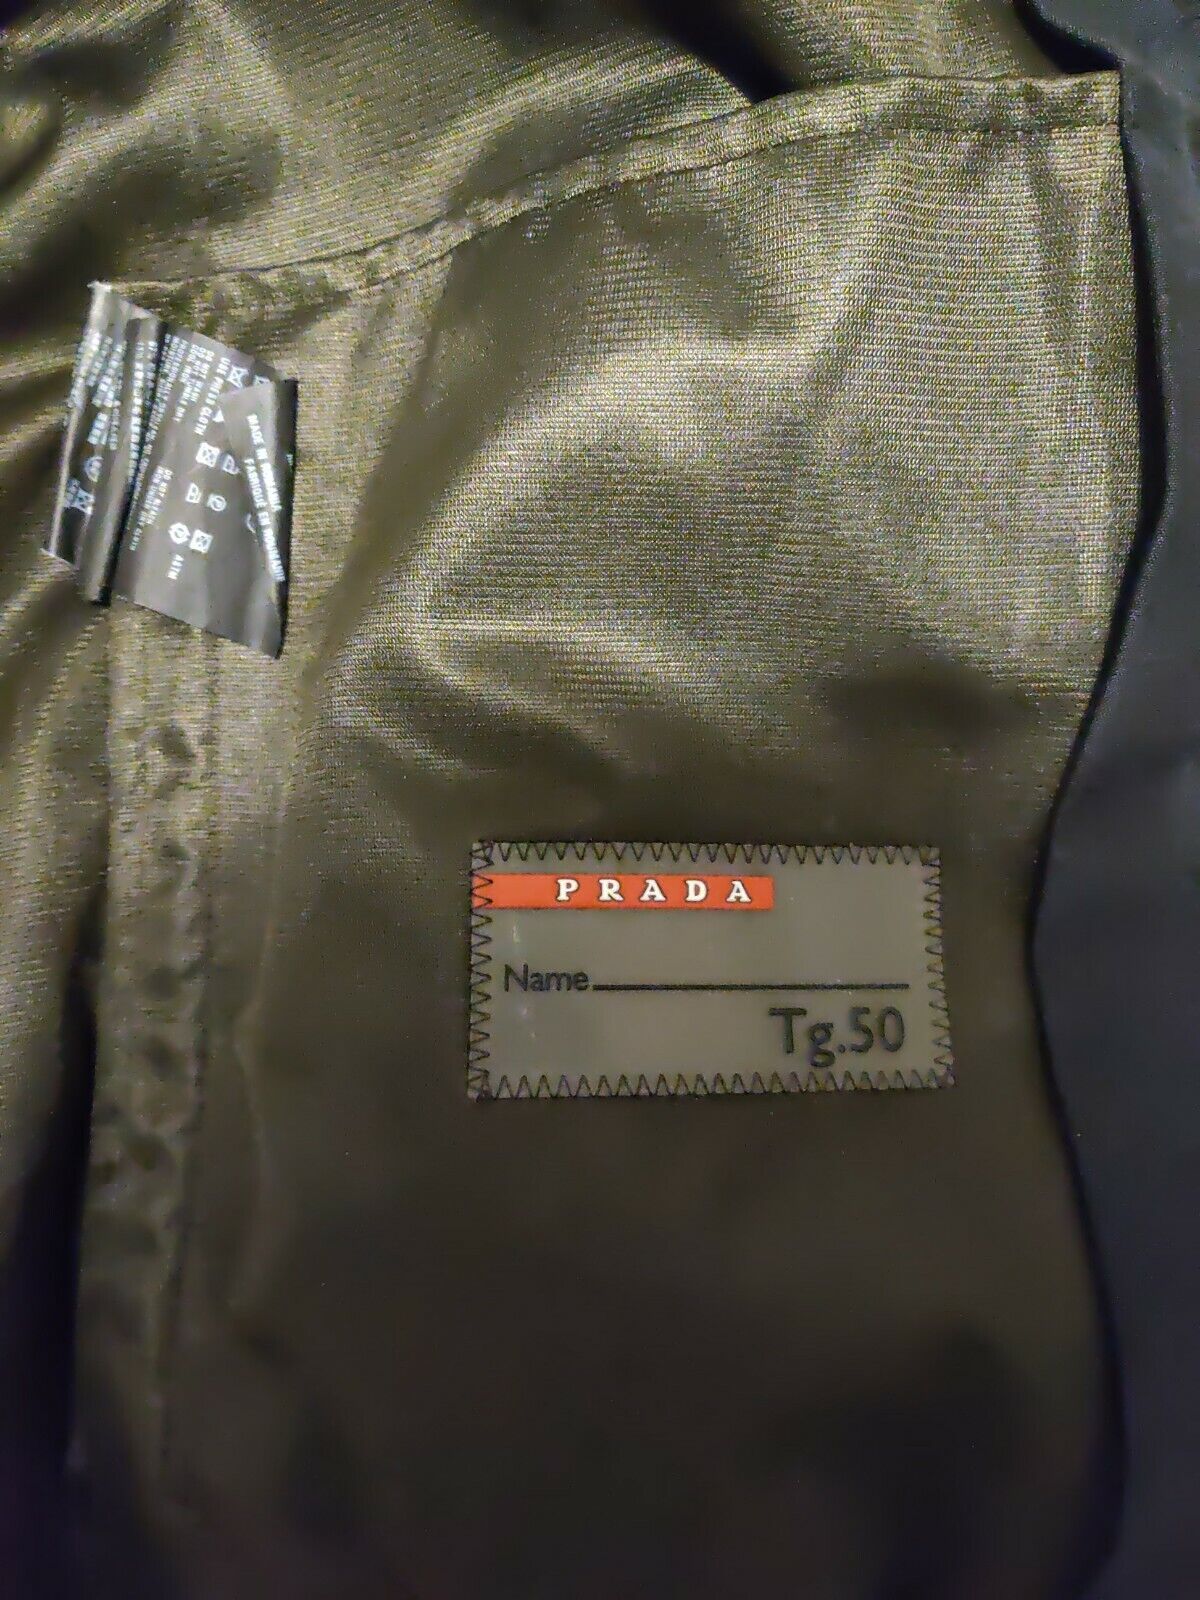 Prada Jacket Tg 50 - Size Large